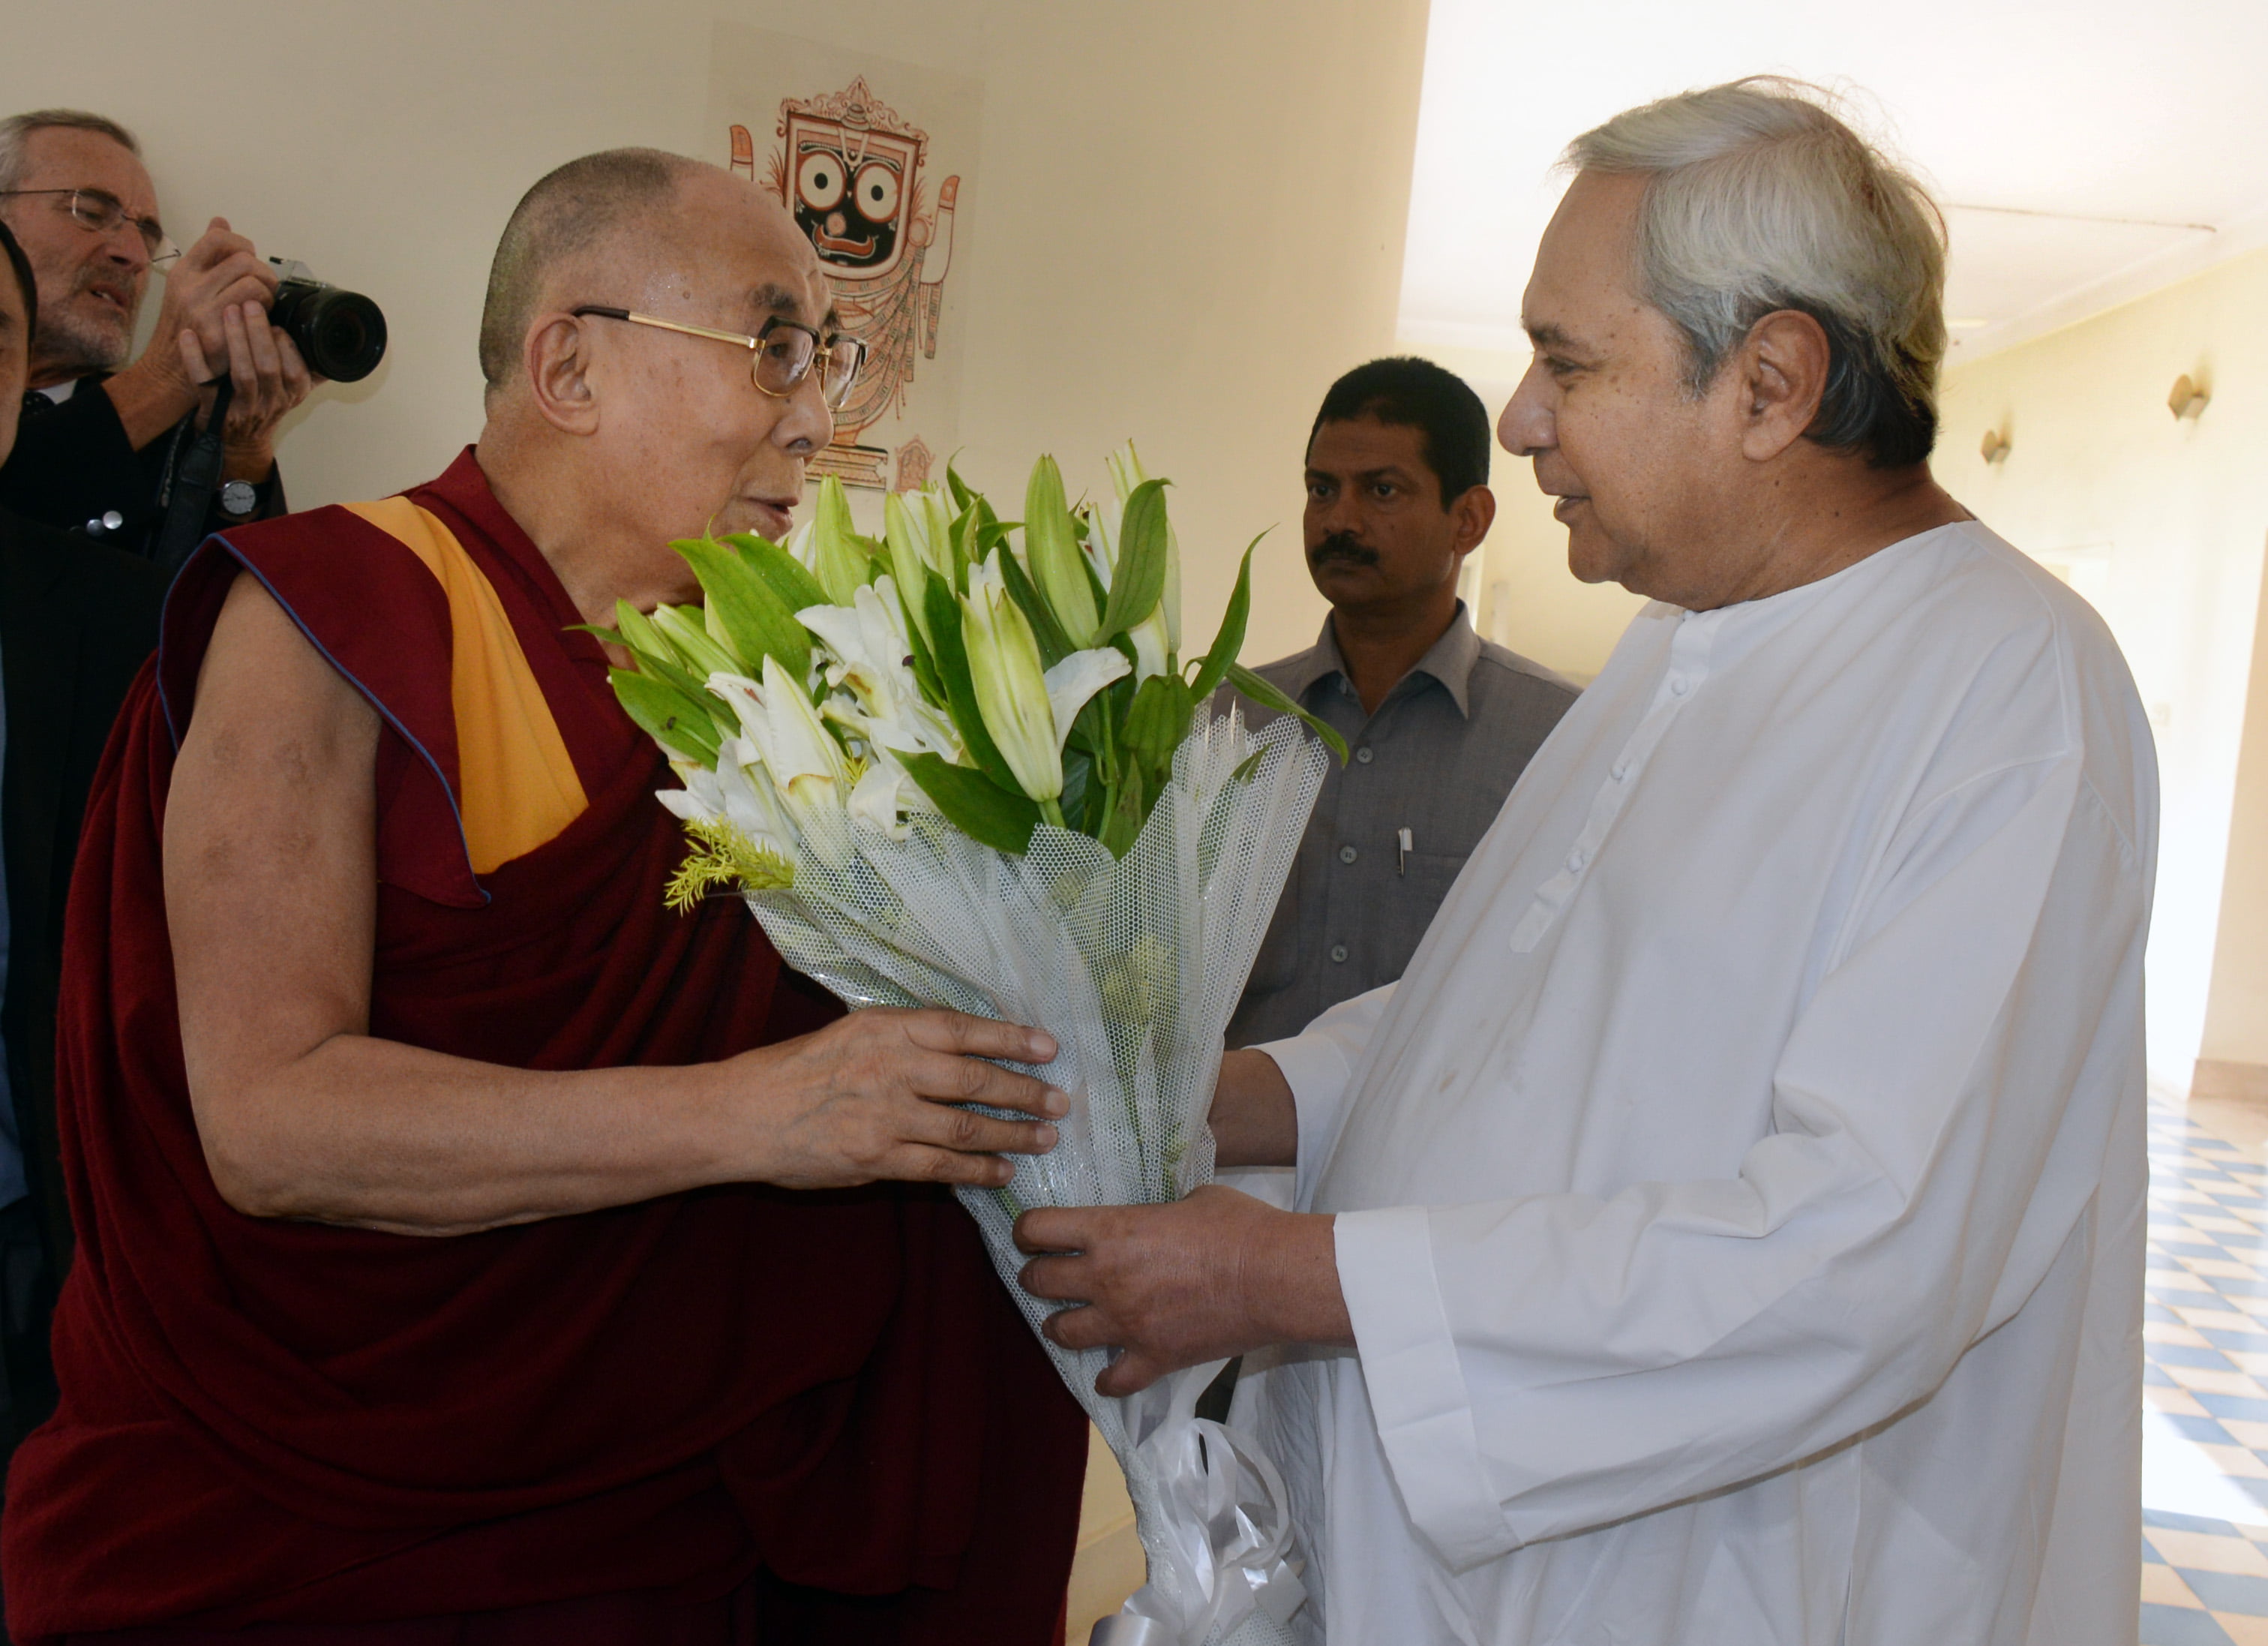 Dalai Lama with Chief Minister Naveen Patnaik at Naveen Niwas in Bhubaneswar